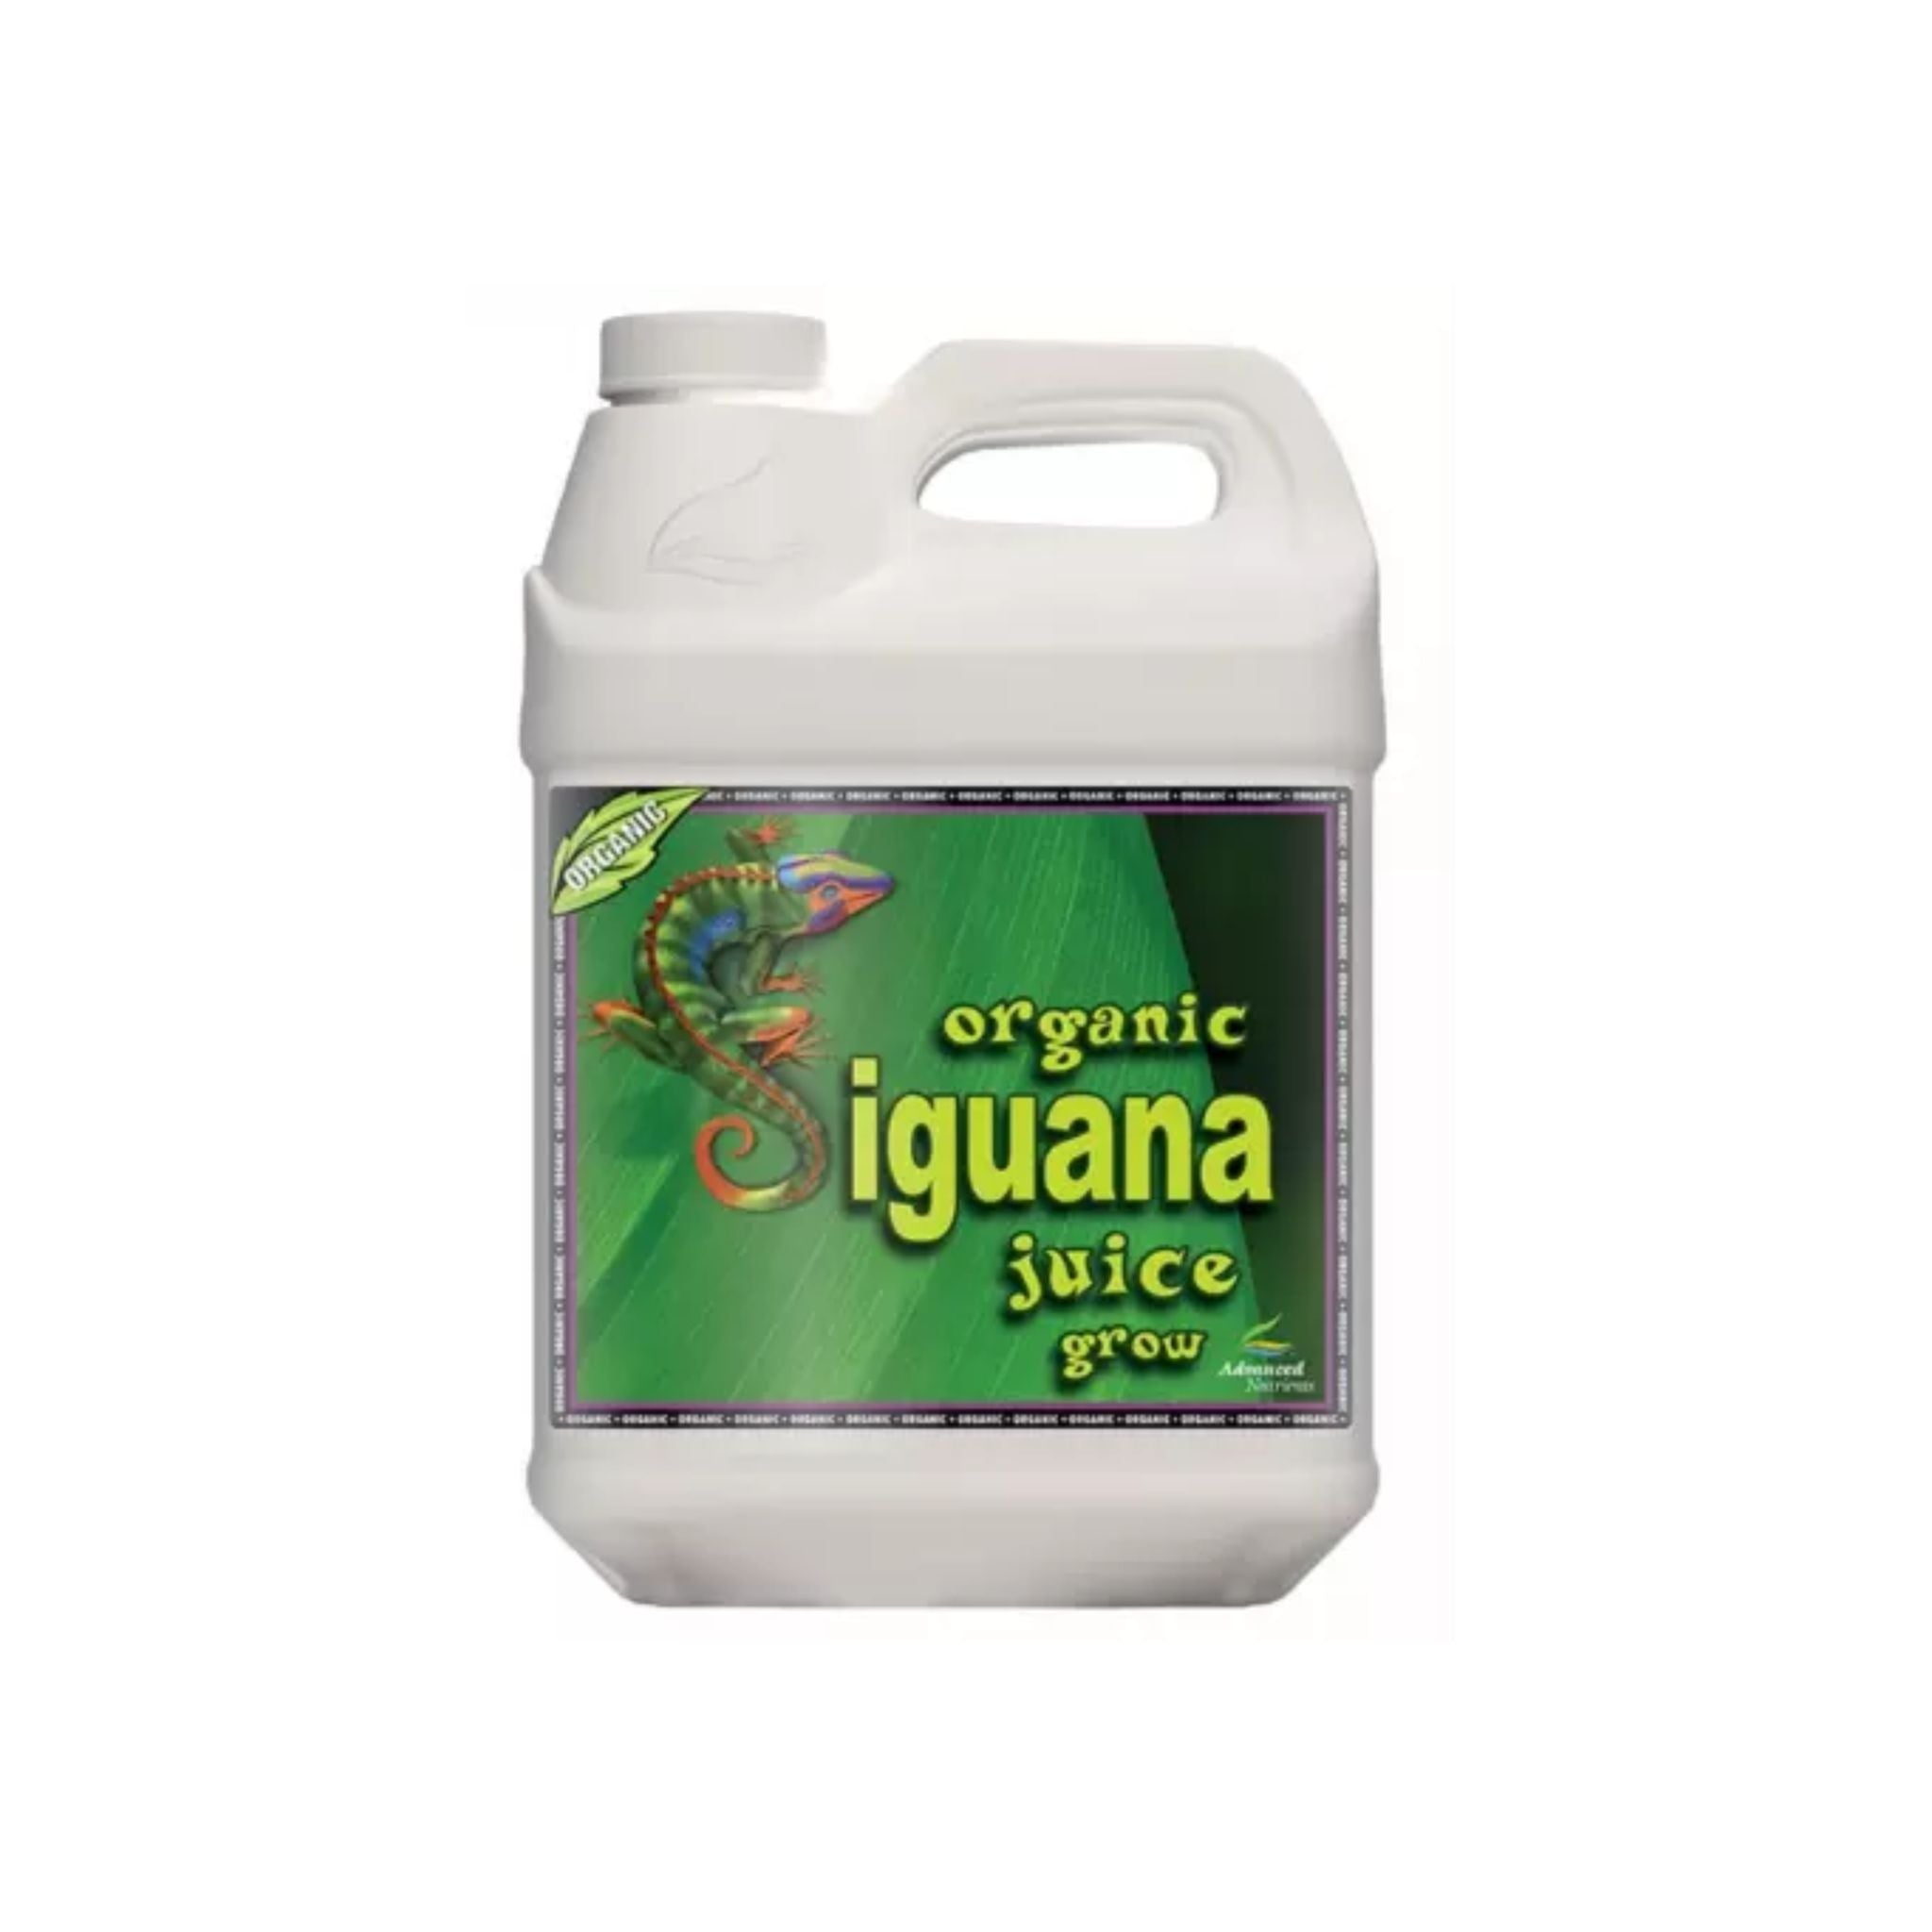 Advanced Nutrients Iguana Grow